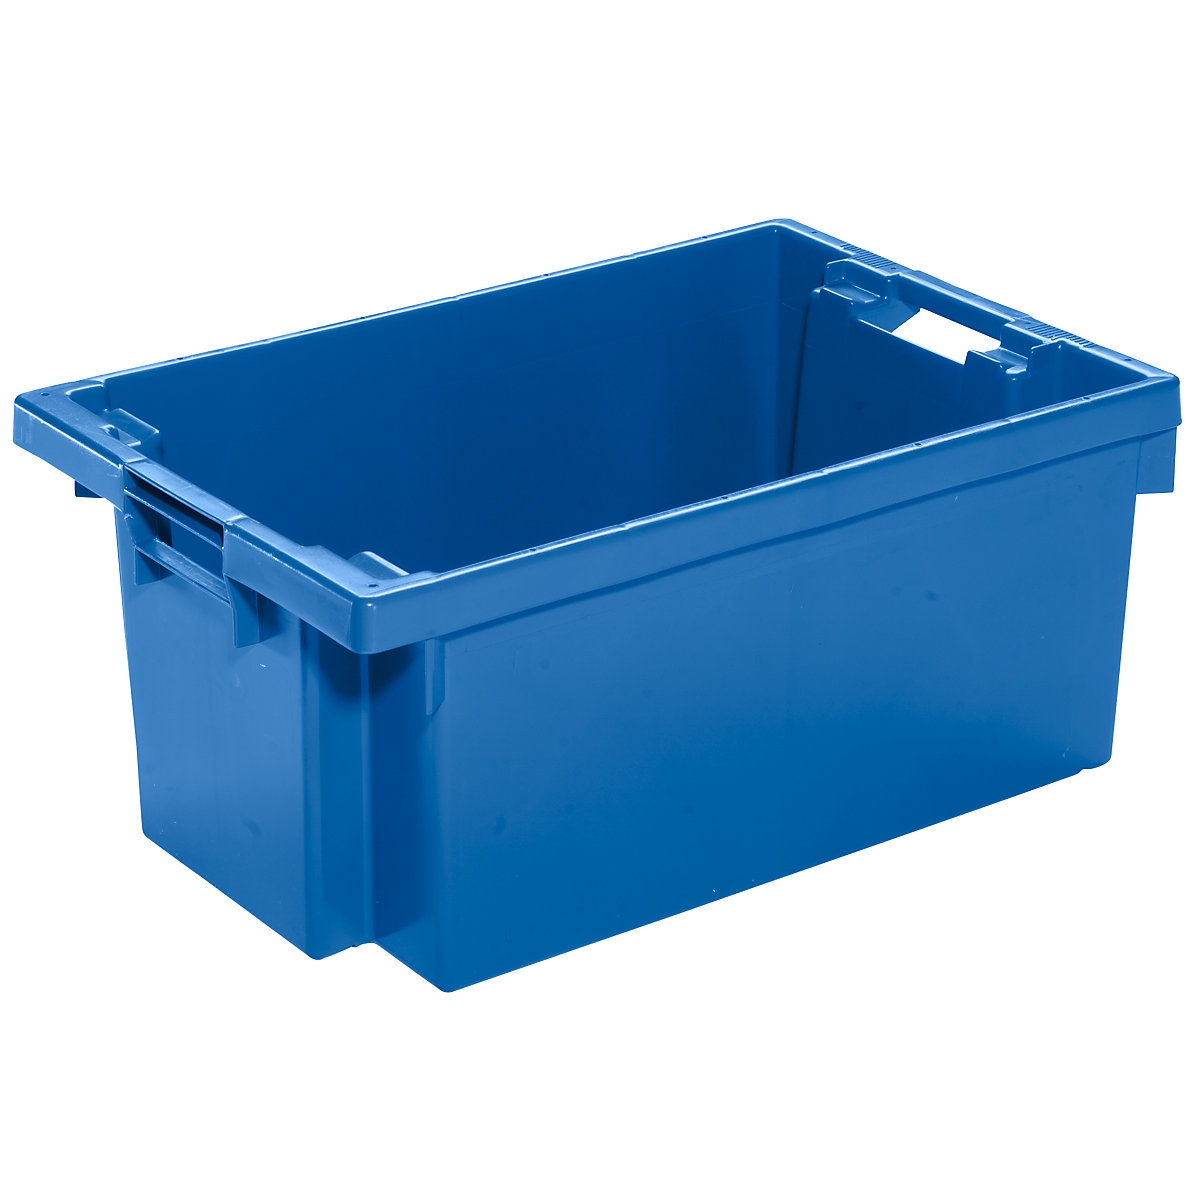 Drehstapelbehälter aus HDPE, Inhalt 40 l, Wände und Boden geschlossen, blau